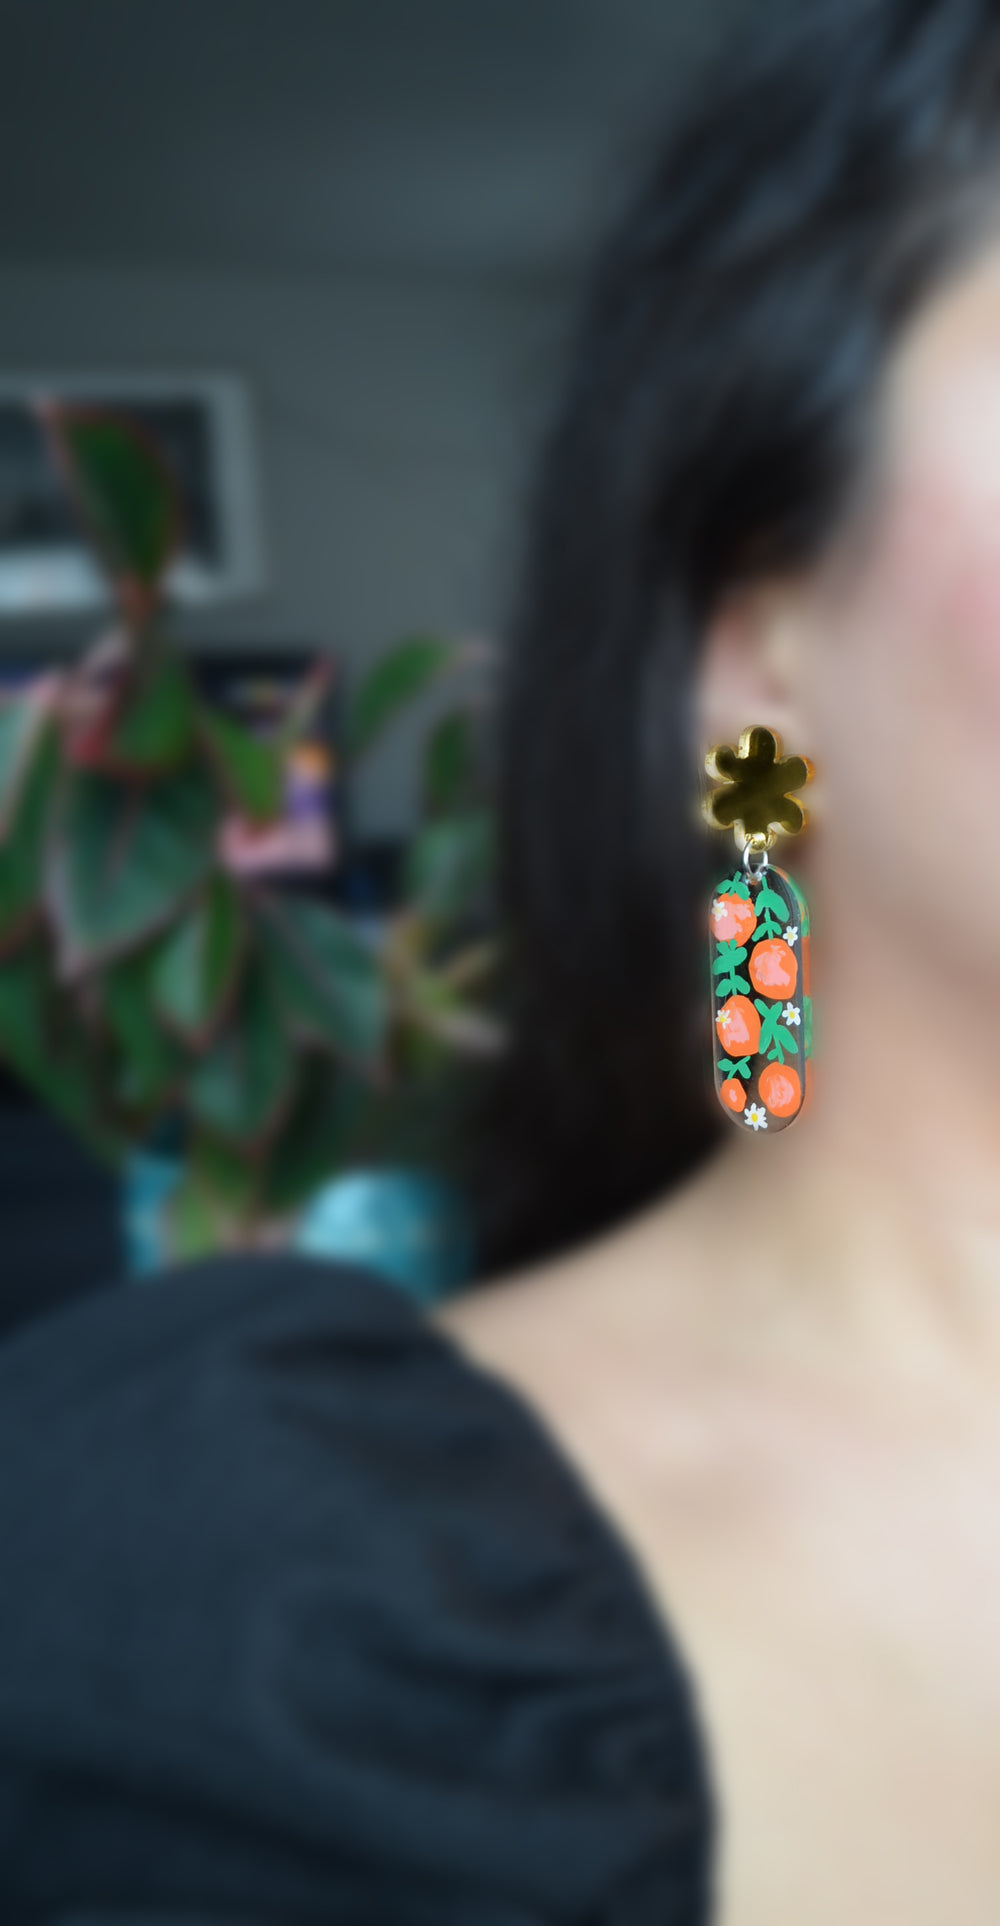 Orange Blossom Flower Resin Earrings, Laser Cut Acrylic Jewelry